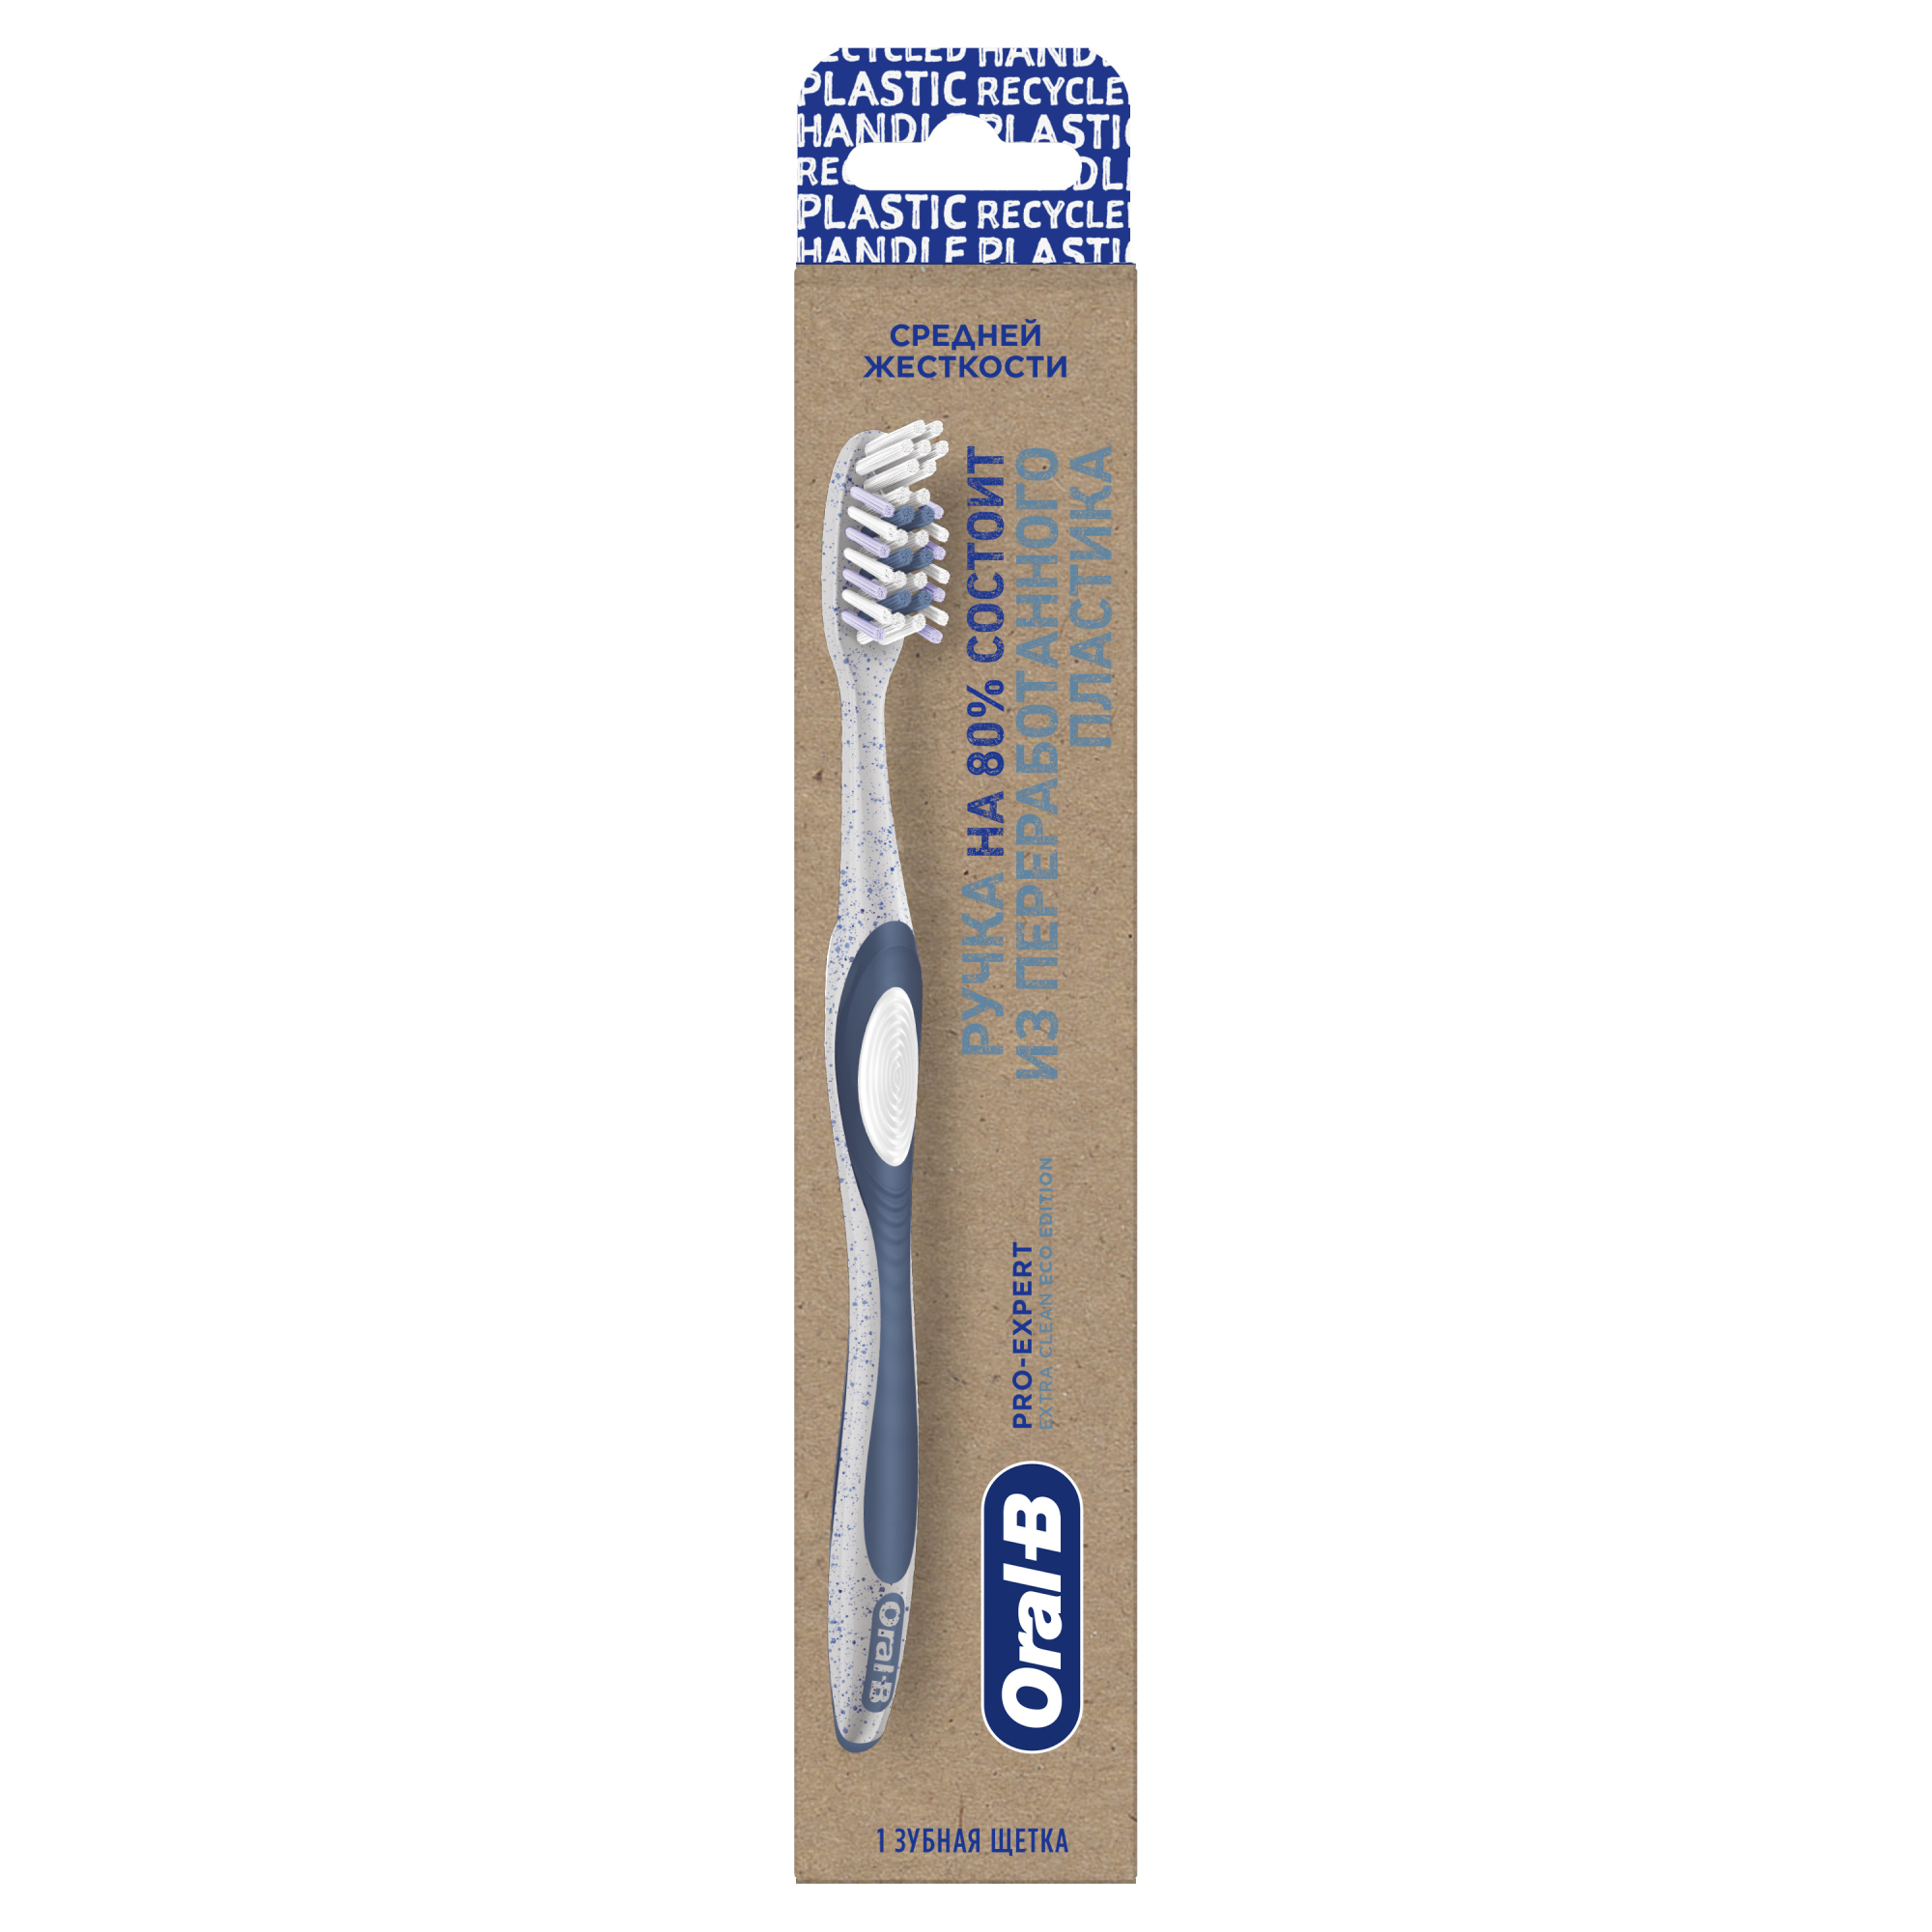 Зубная щетка Oral-B Pro-Expert Eco Edition из переработанного пластика для эффективного очищения, средней жесткости, 1 шт щетка collonil glanzburste темная средняя